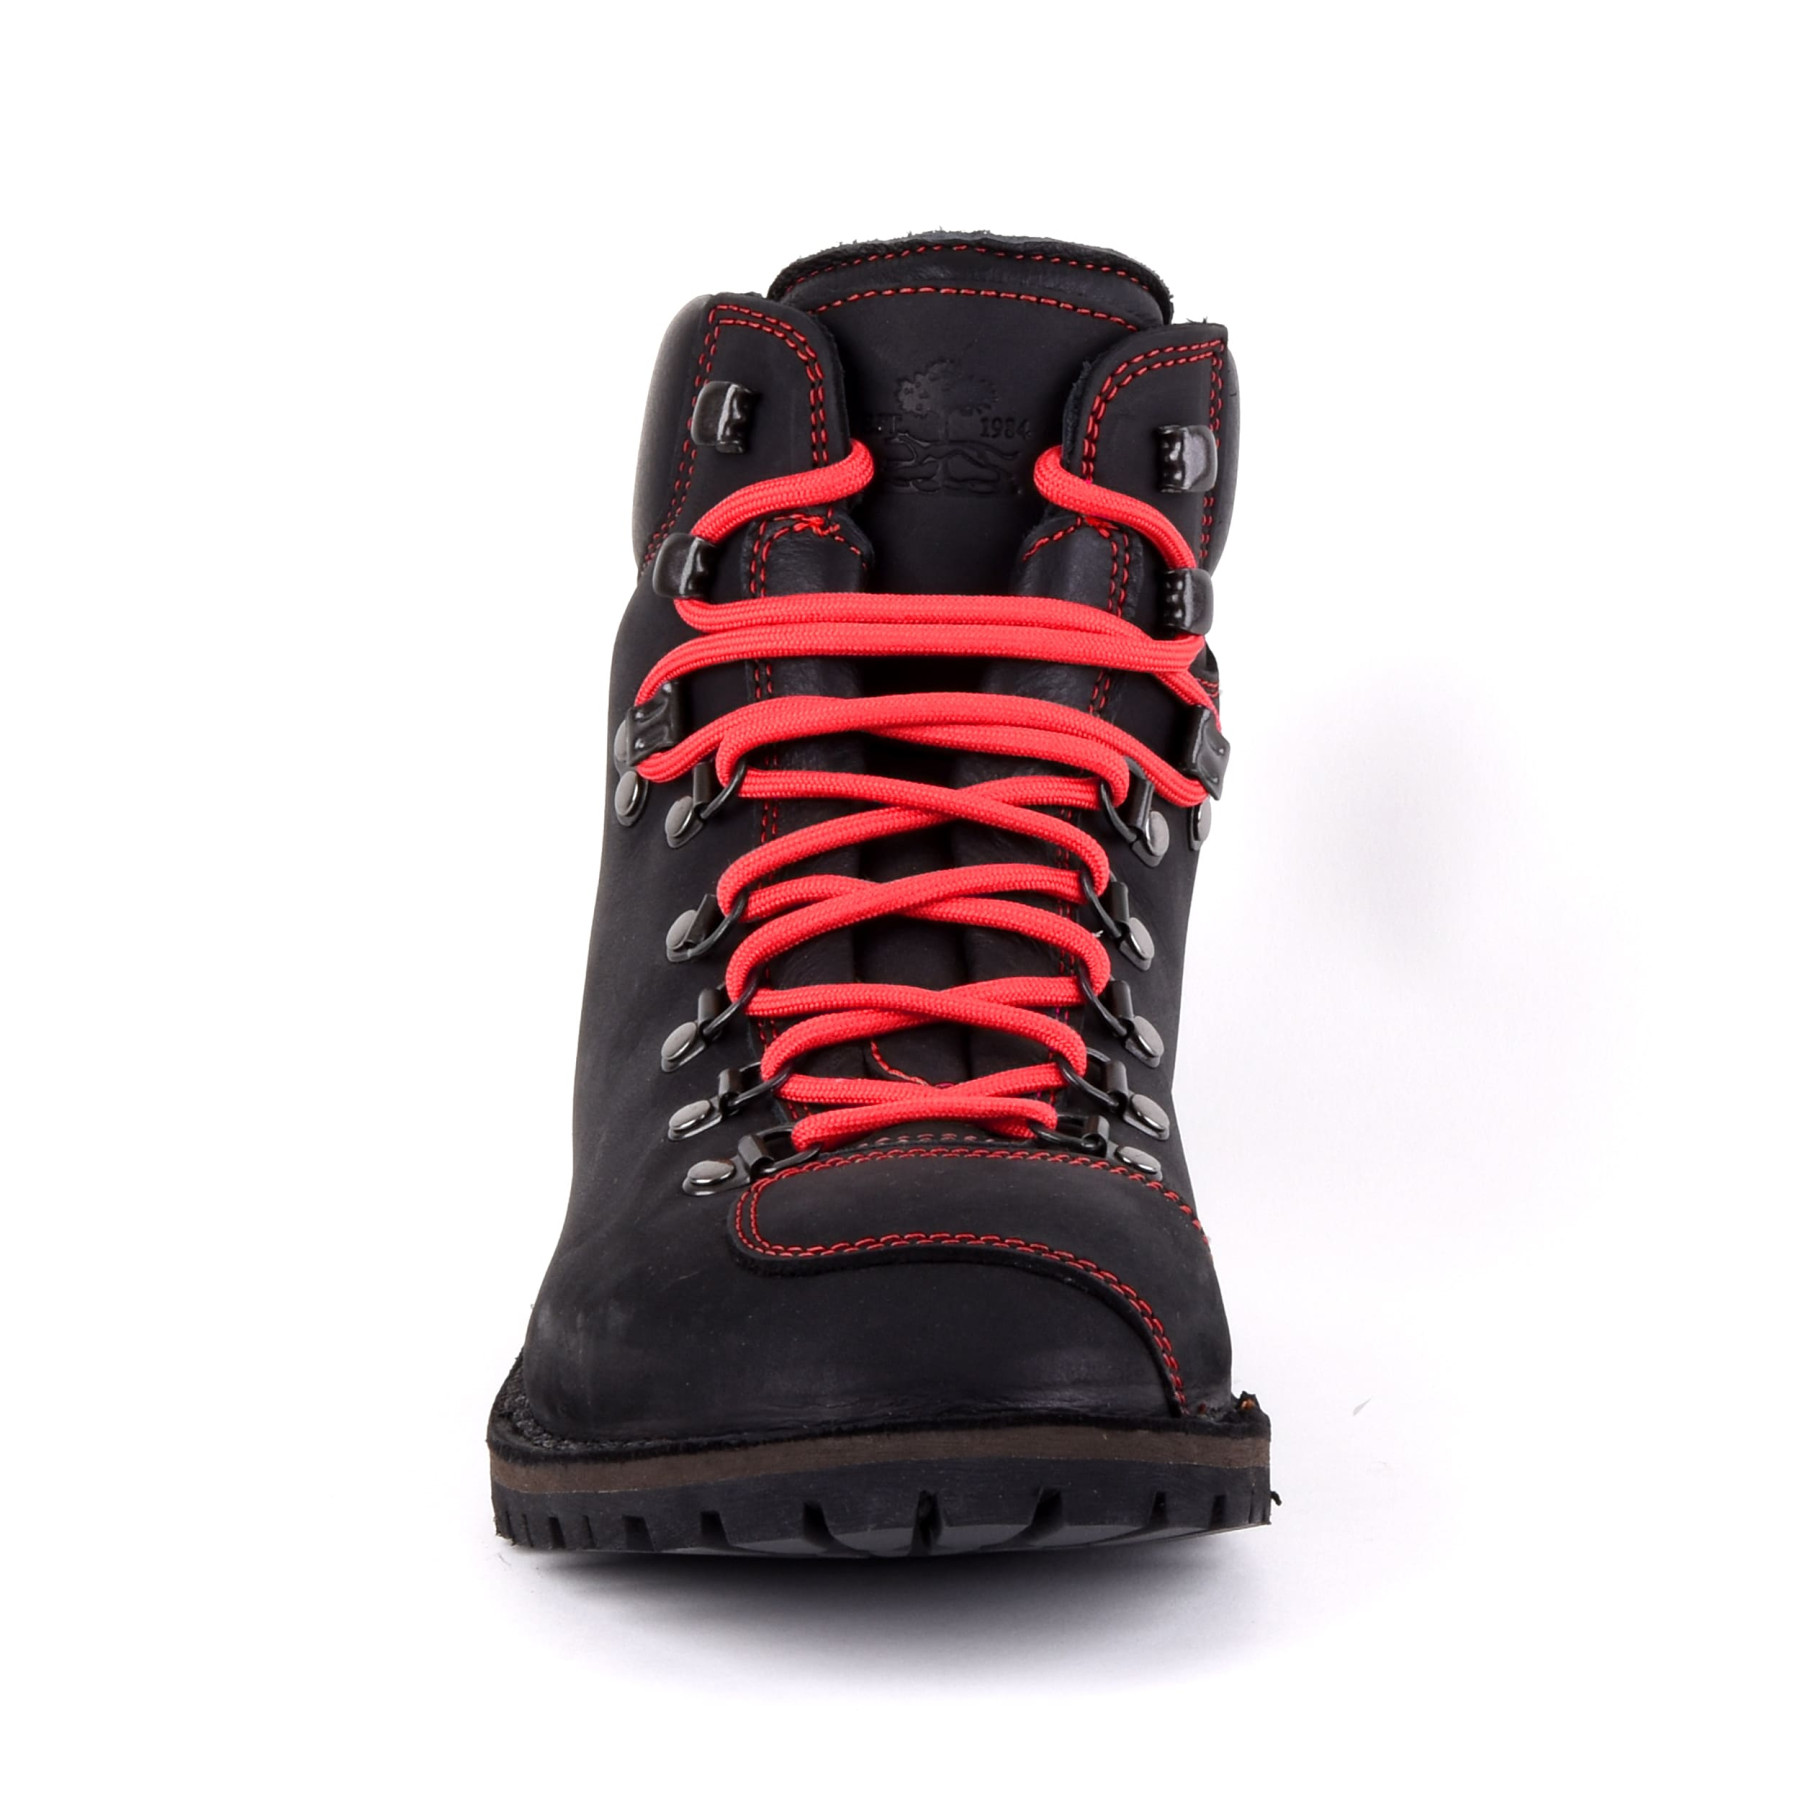 Biker Boot Adventure Denver Black, black ladies boot, red stitching